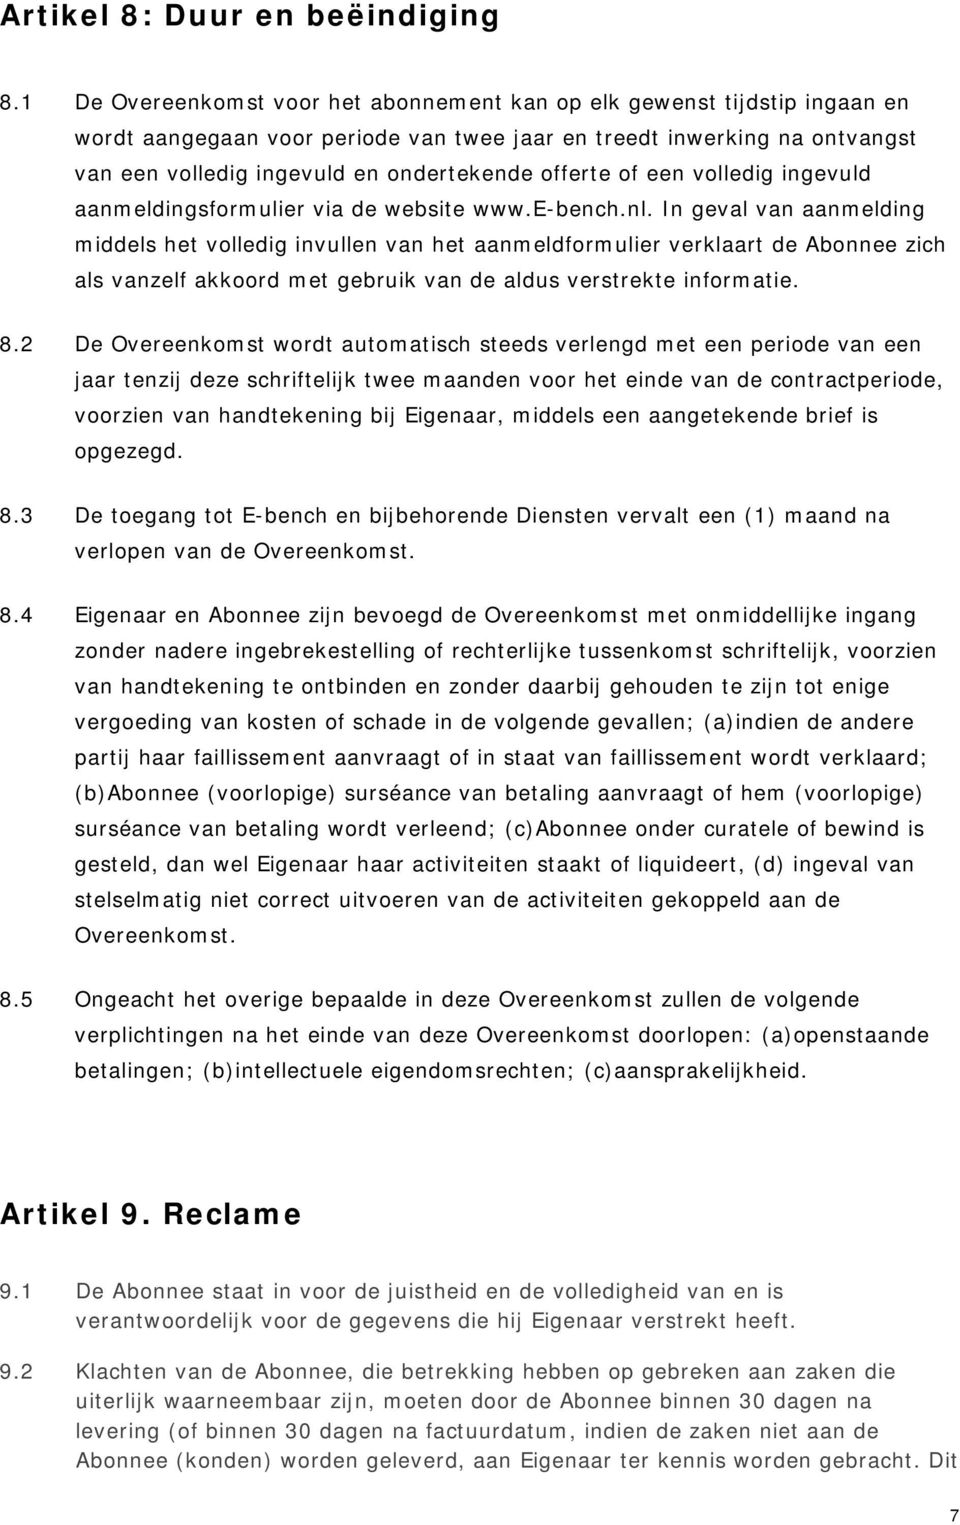 offerte of een volledig ingevuld aanmeldingsformulier via de website www.e-bench.nl.